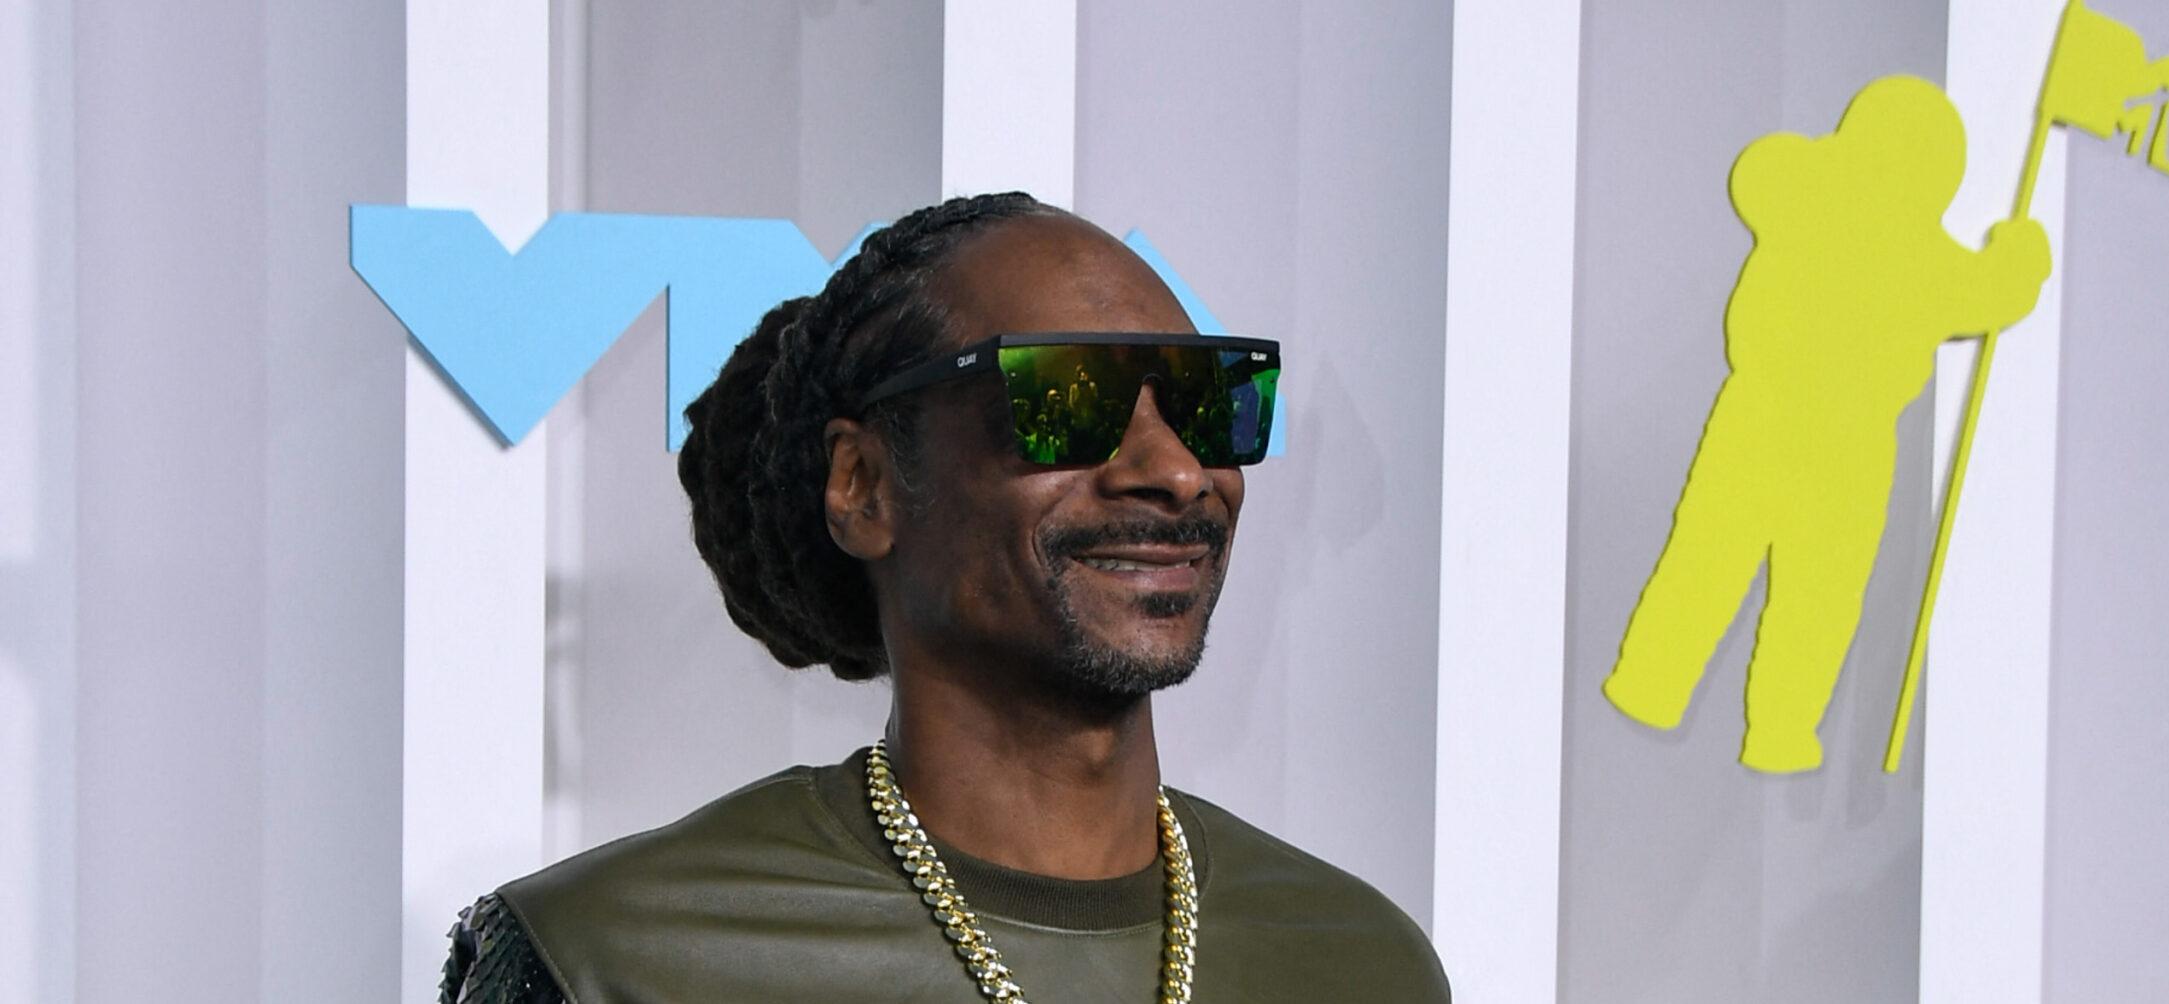 Snoop Dogg at the 2022 VMA's